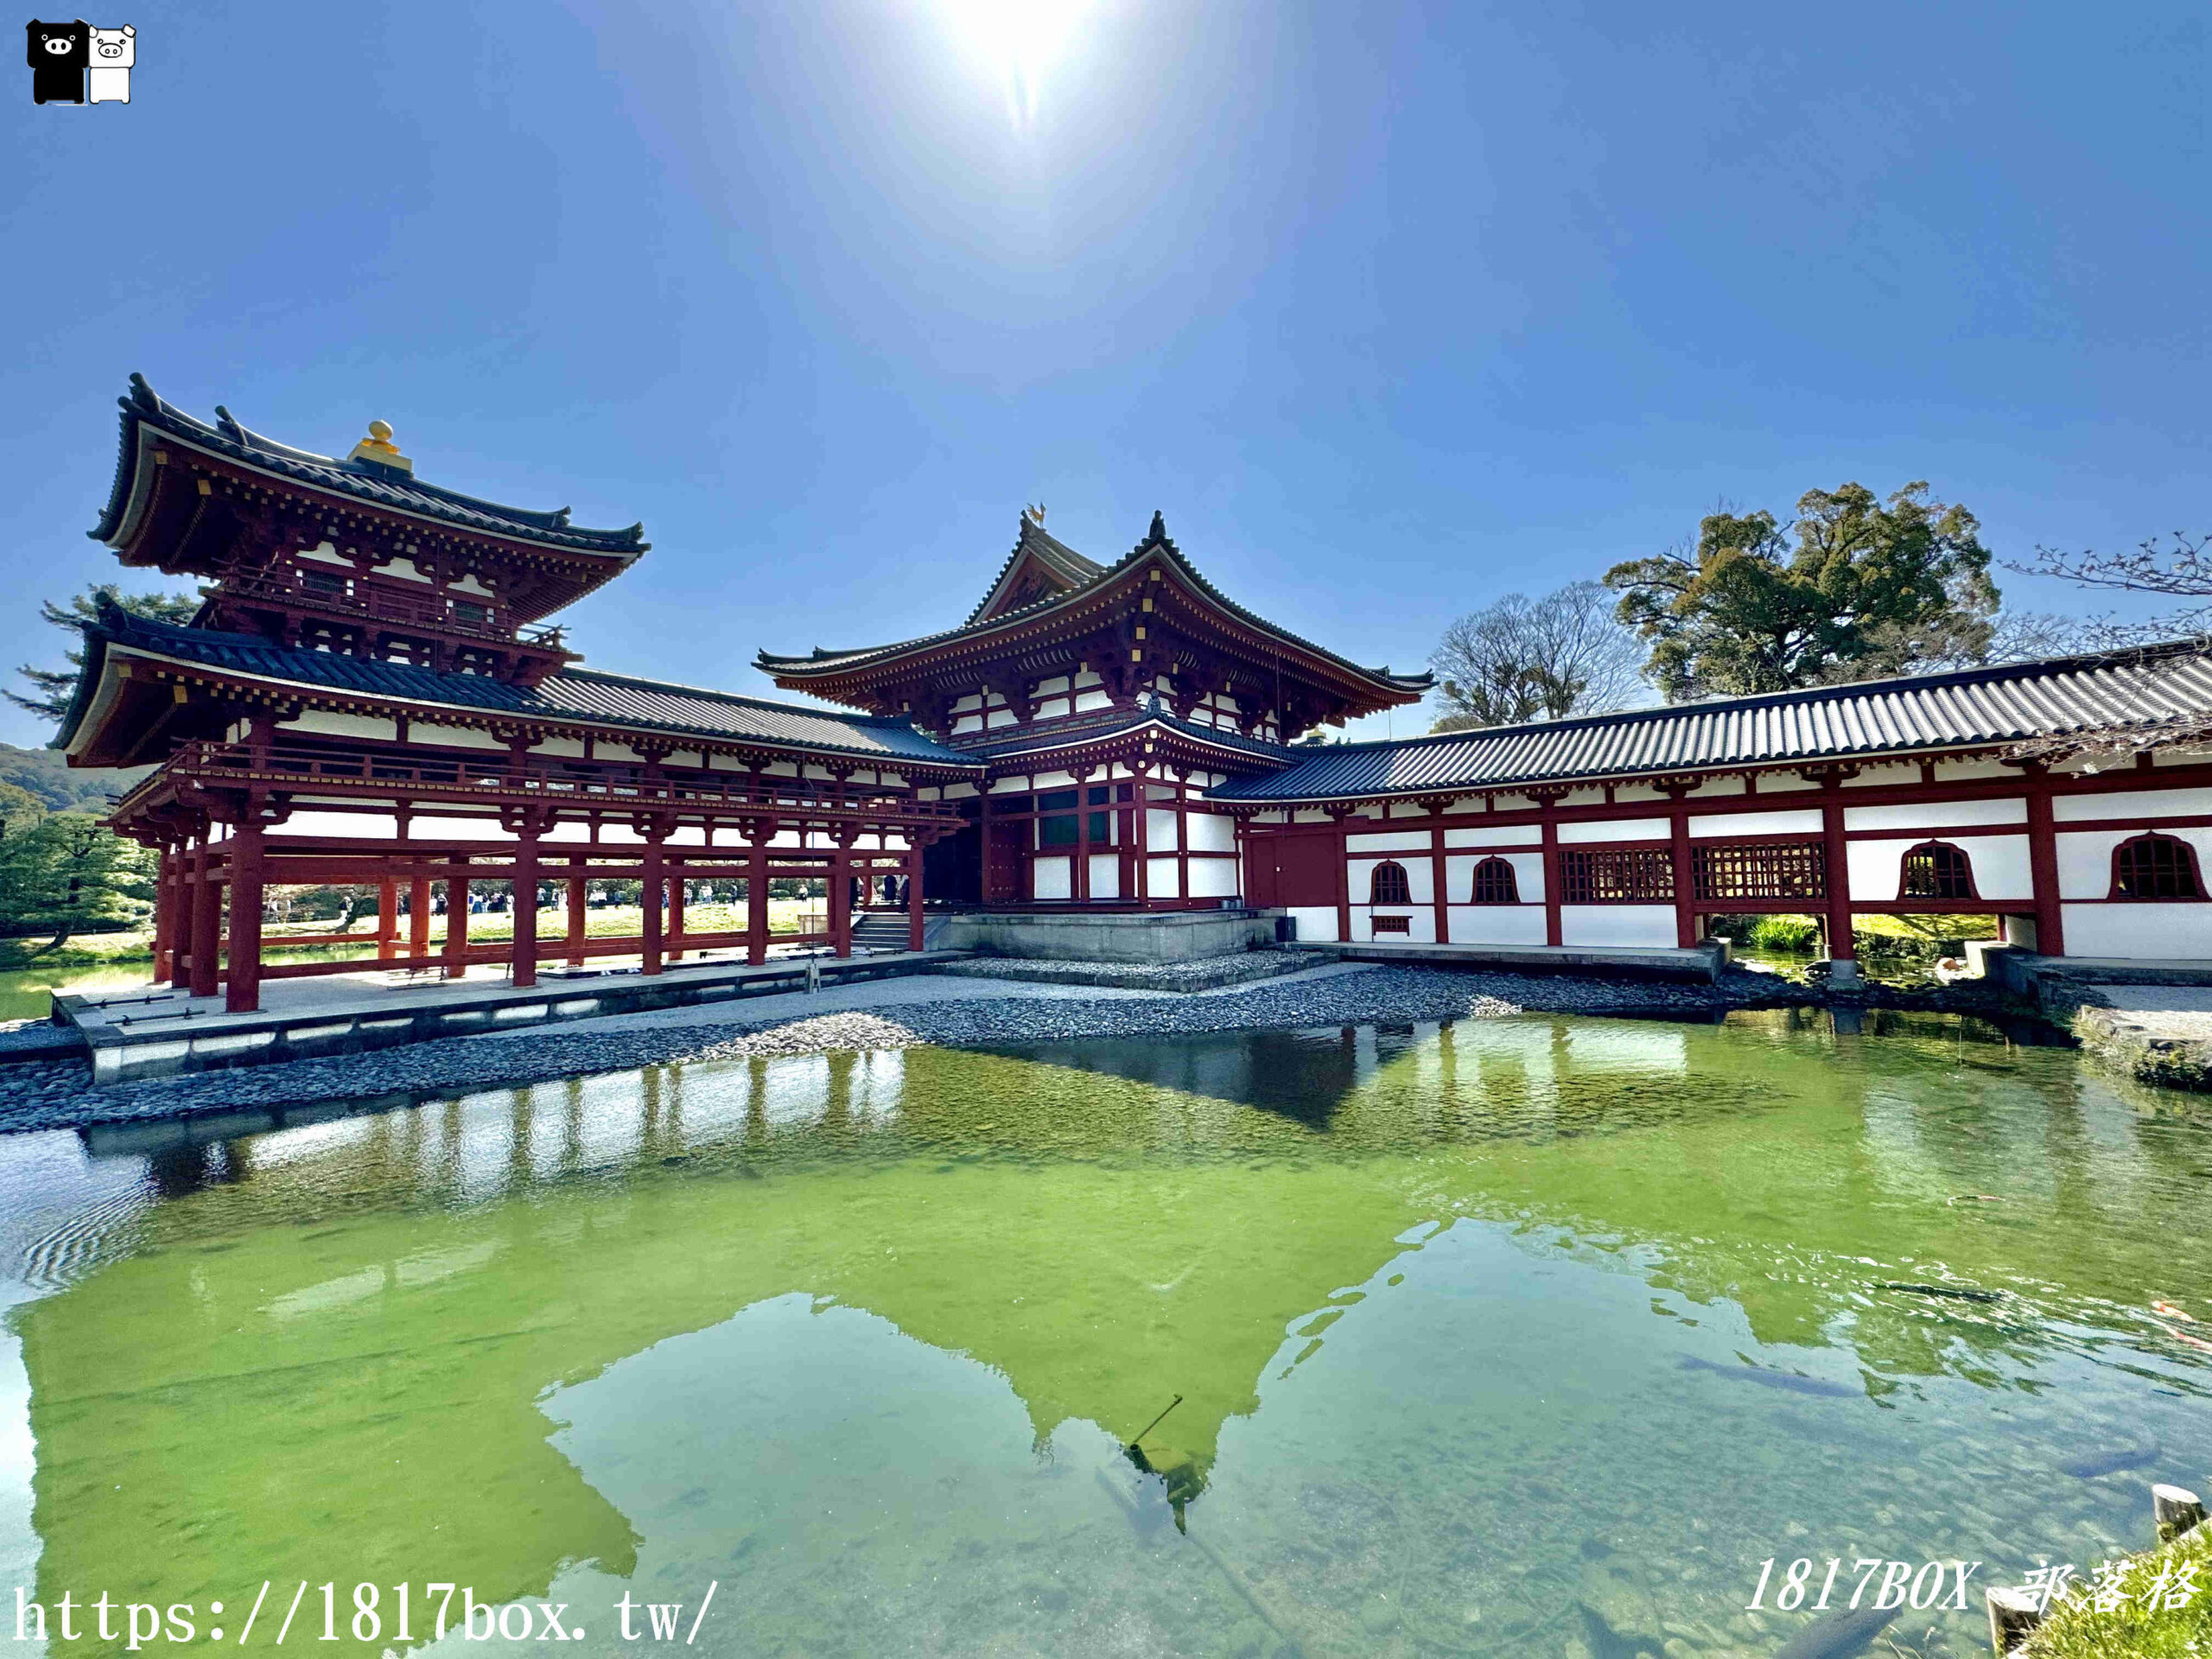 【宇治景點】世界遺產。平等院。如鏡子般倒映鳳凰堂優美姿態的阿字池。古都京都的文化財產